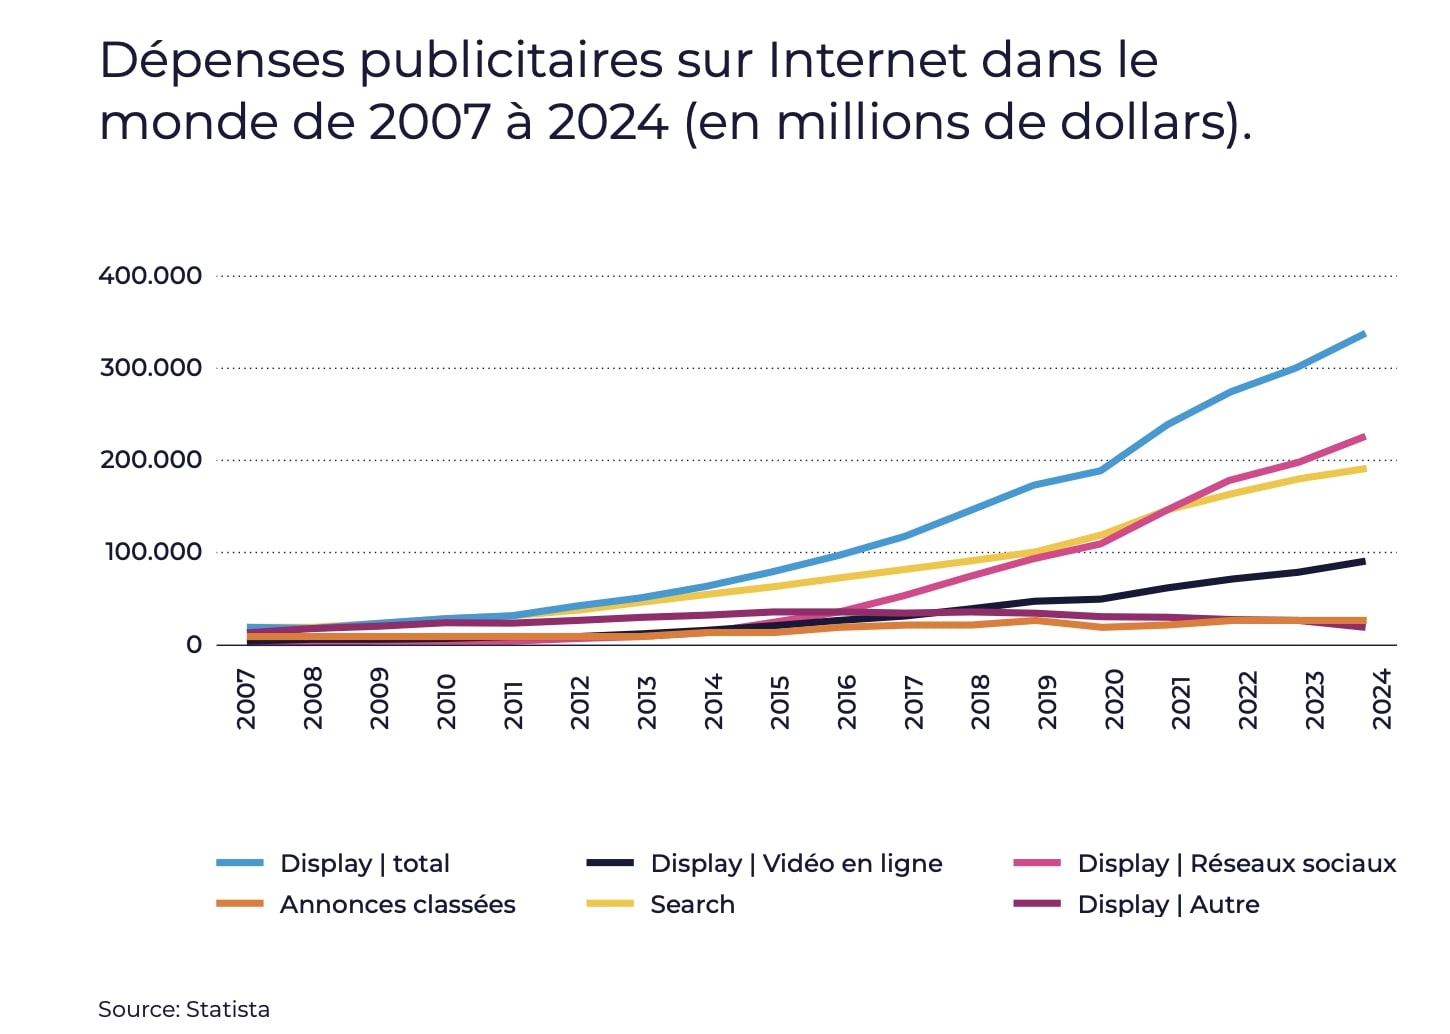 dépenses publicitaires sur internet dans le monde de 2007 à 2024 (en millions de dollars) : augmentation